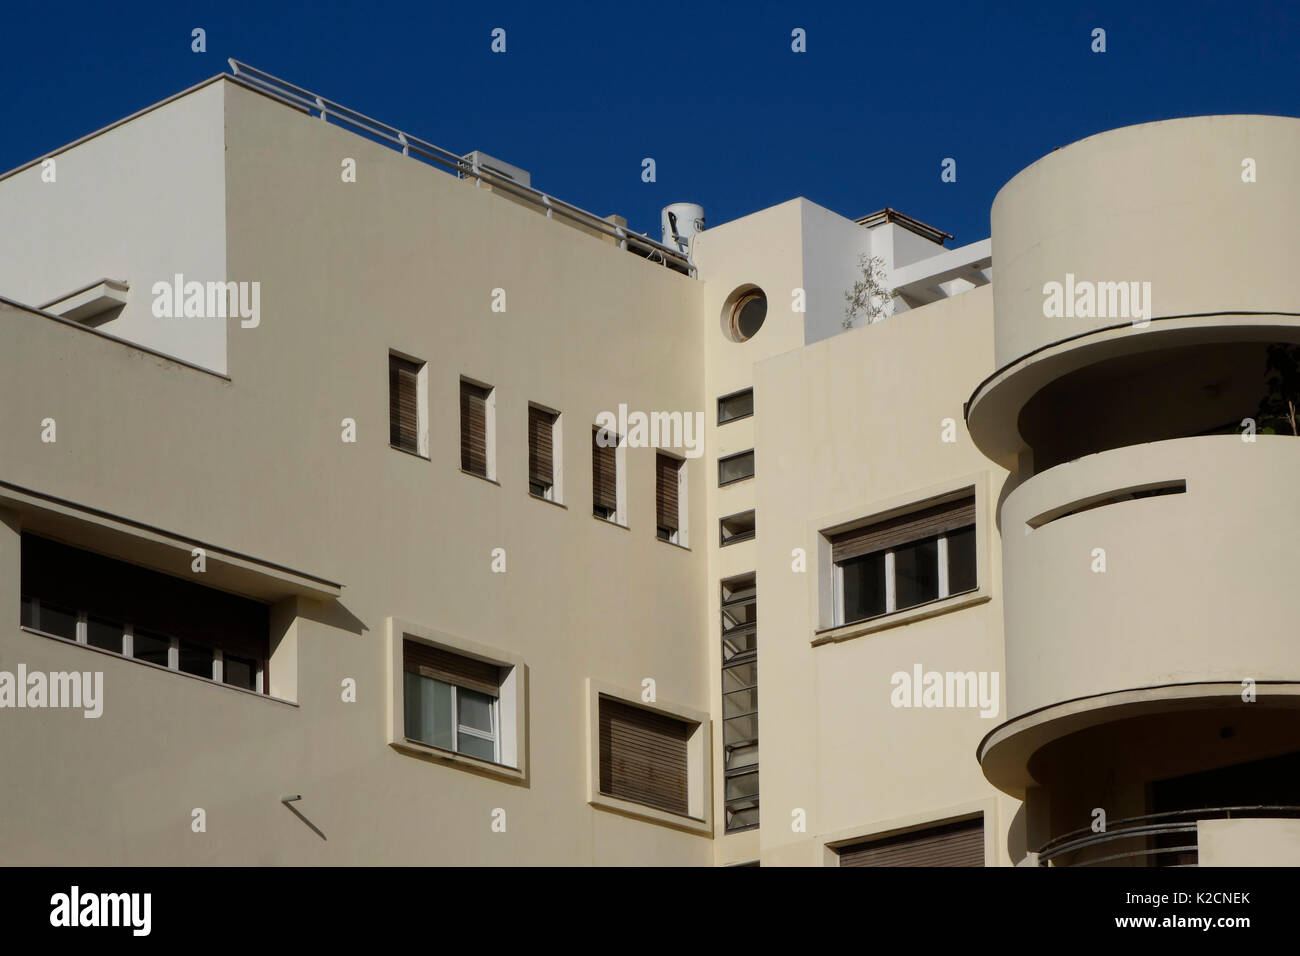 Un bâtiment rénové qui a été construit dans les années 1930 en style architecture Bauhaus situé sur la rue Ben Yehuda au centre-ville de Tel Aviv, Israël Banque D'Images